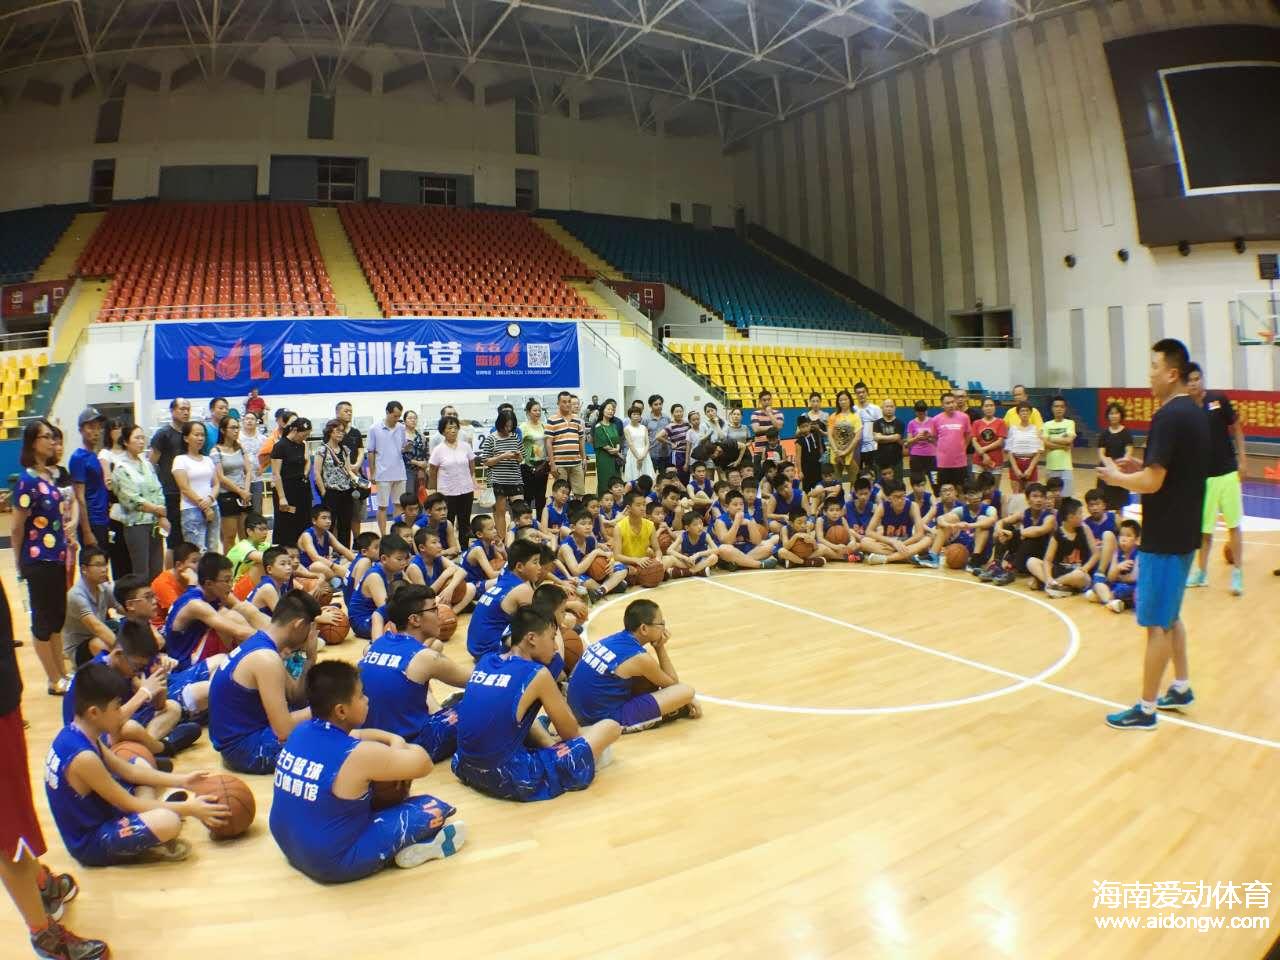 北京RL篮球训练营海口开营 你会是下一个丁彦雨航吗？